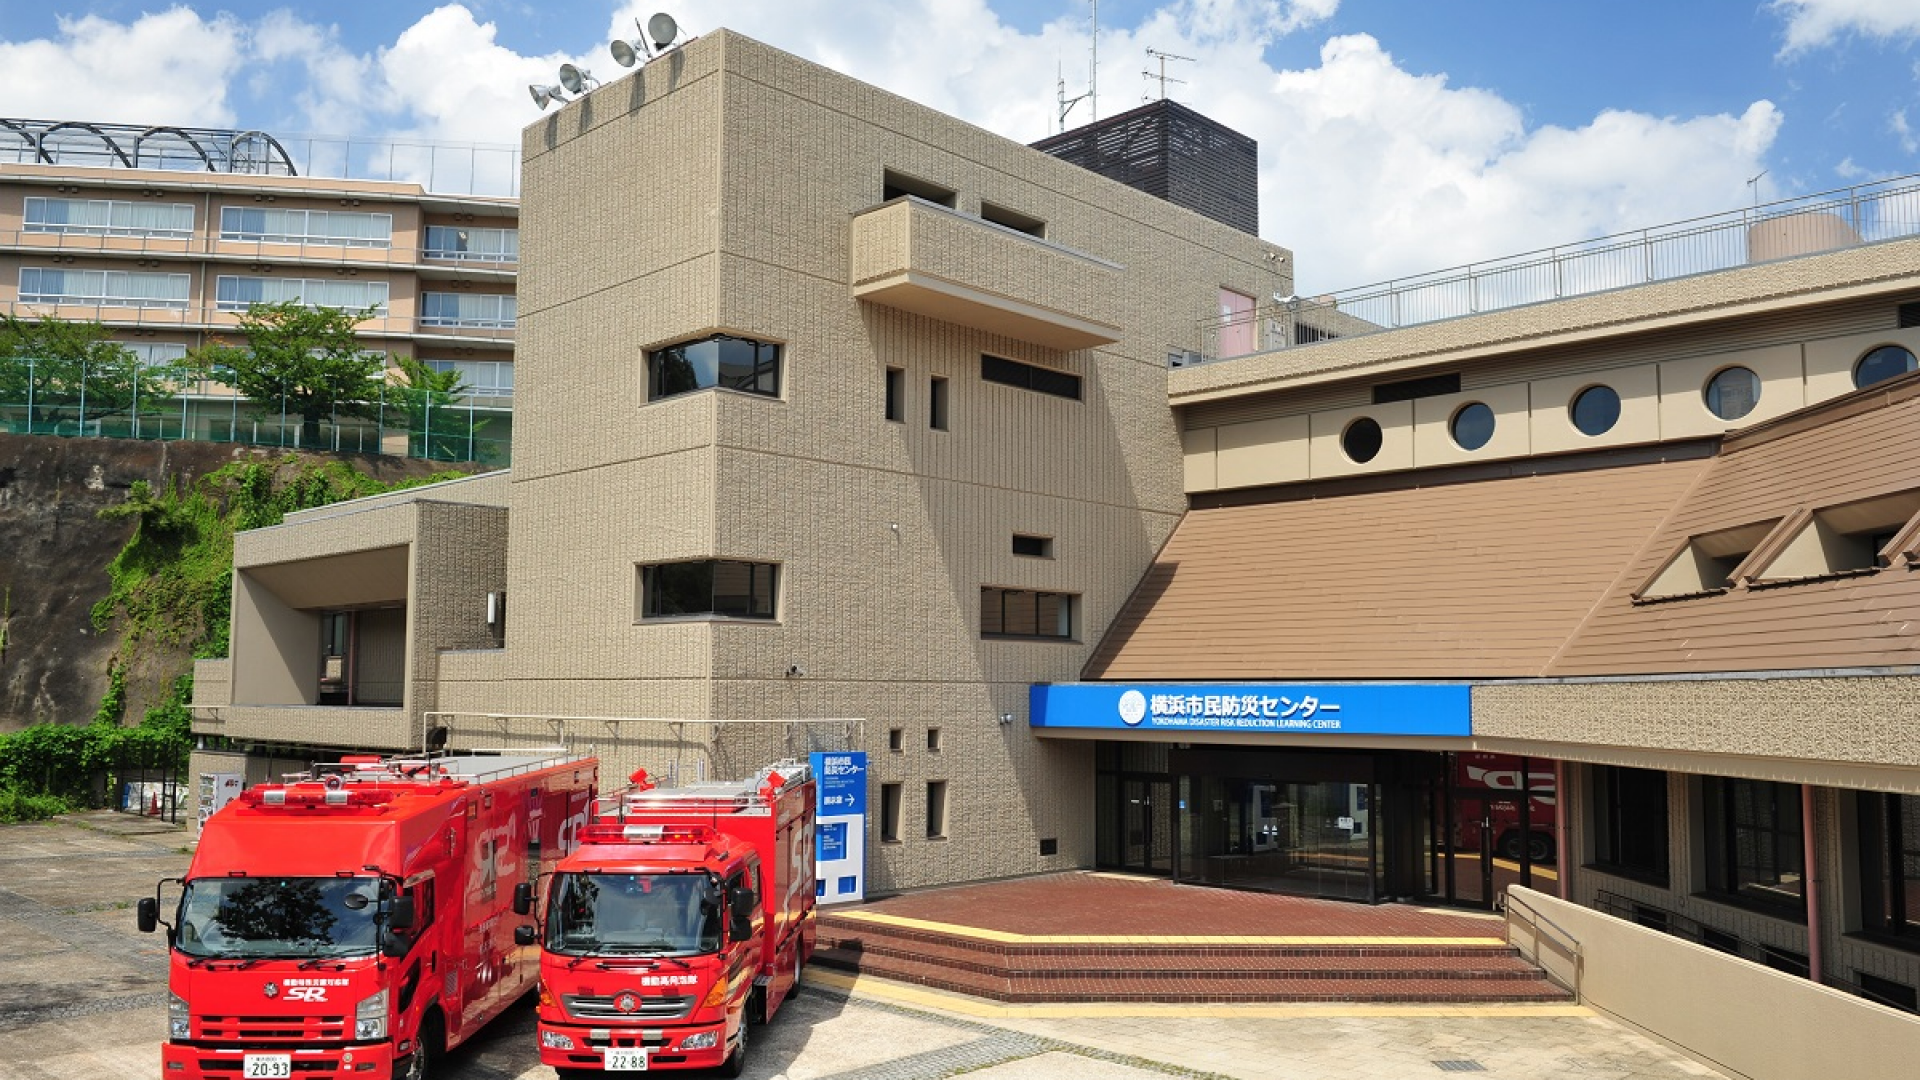 Trung tâm phòng chống thiên tai thành phố Yokohama (Trải nghiệm thảm họa tại nhà hát)